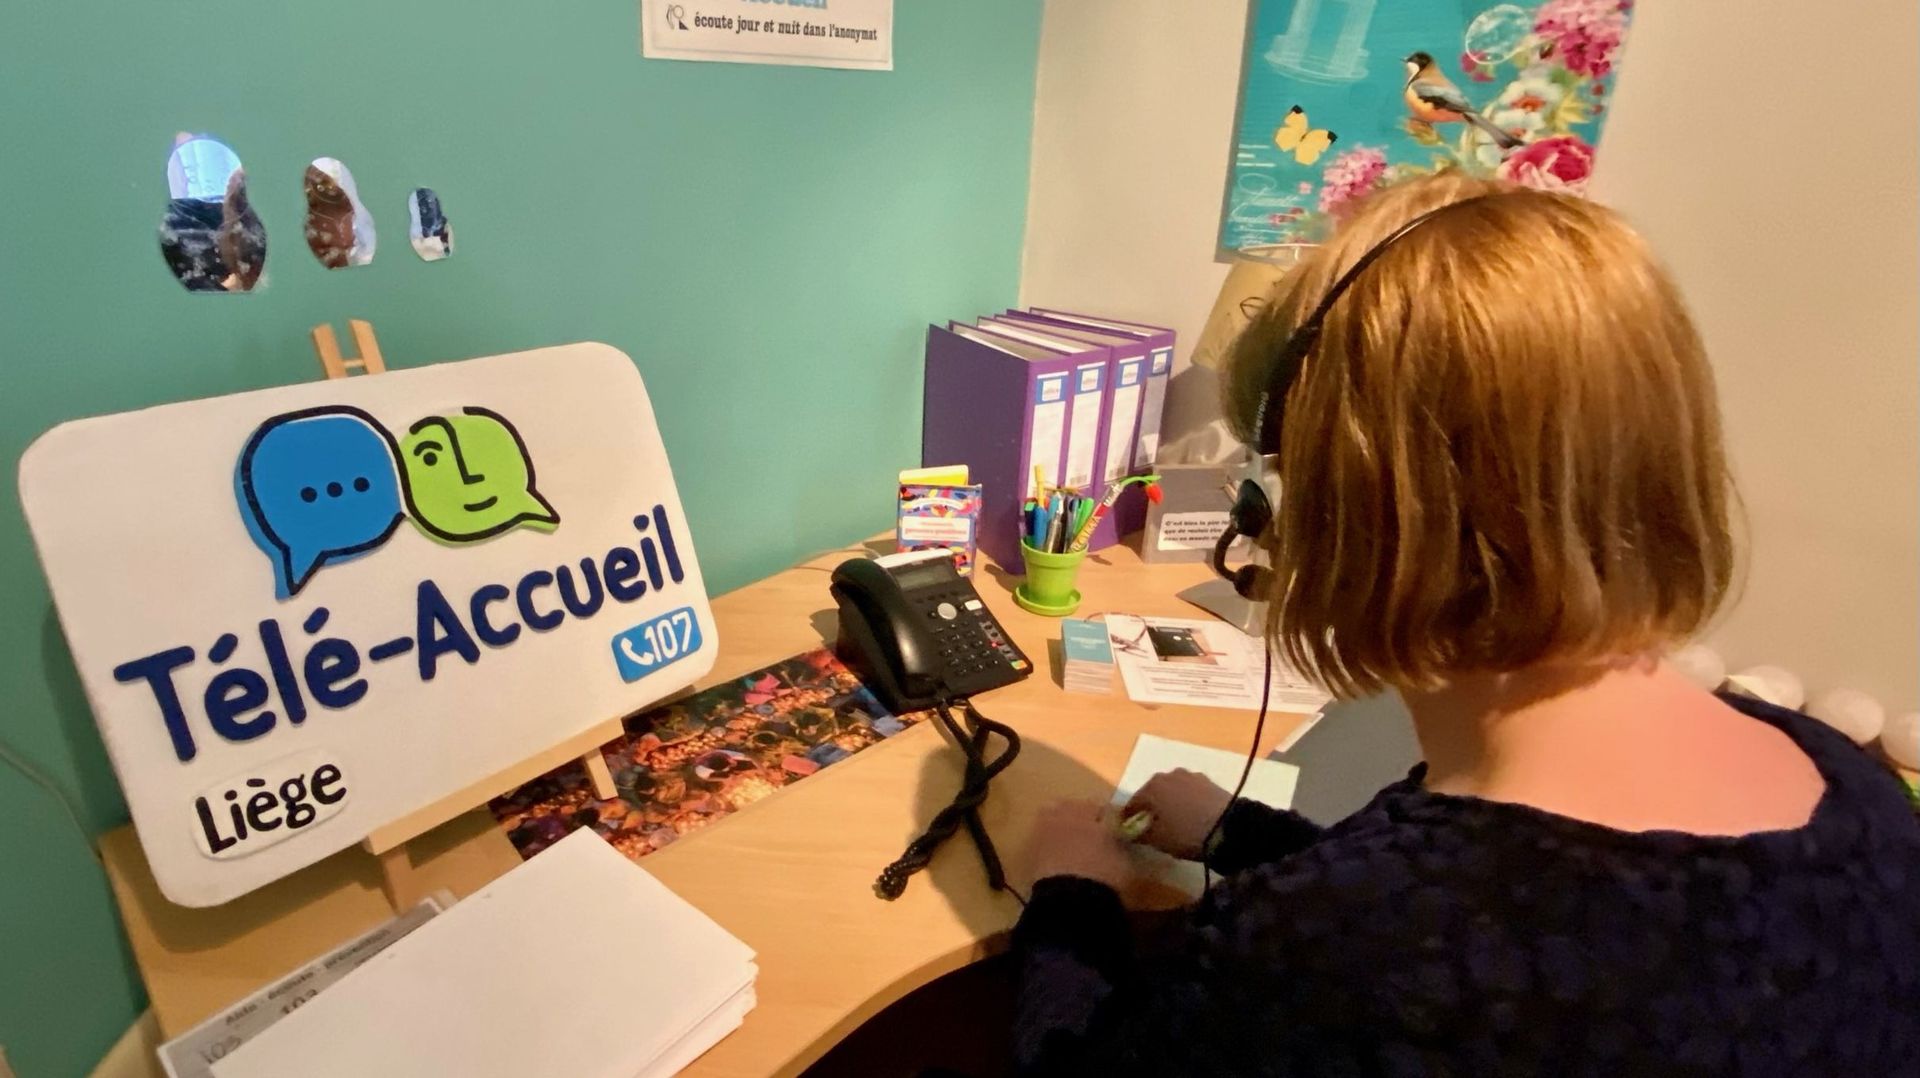 Le central téléphonique de Télé-Accueil de Liège fête ses 50 ans